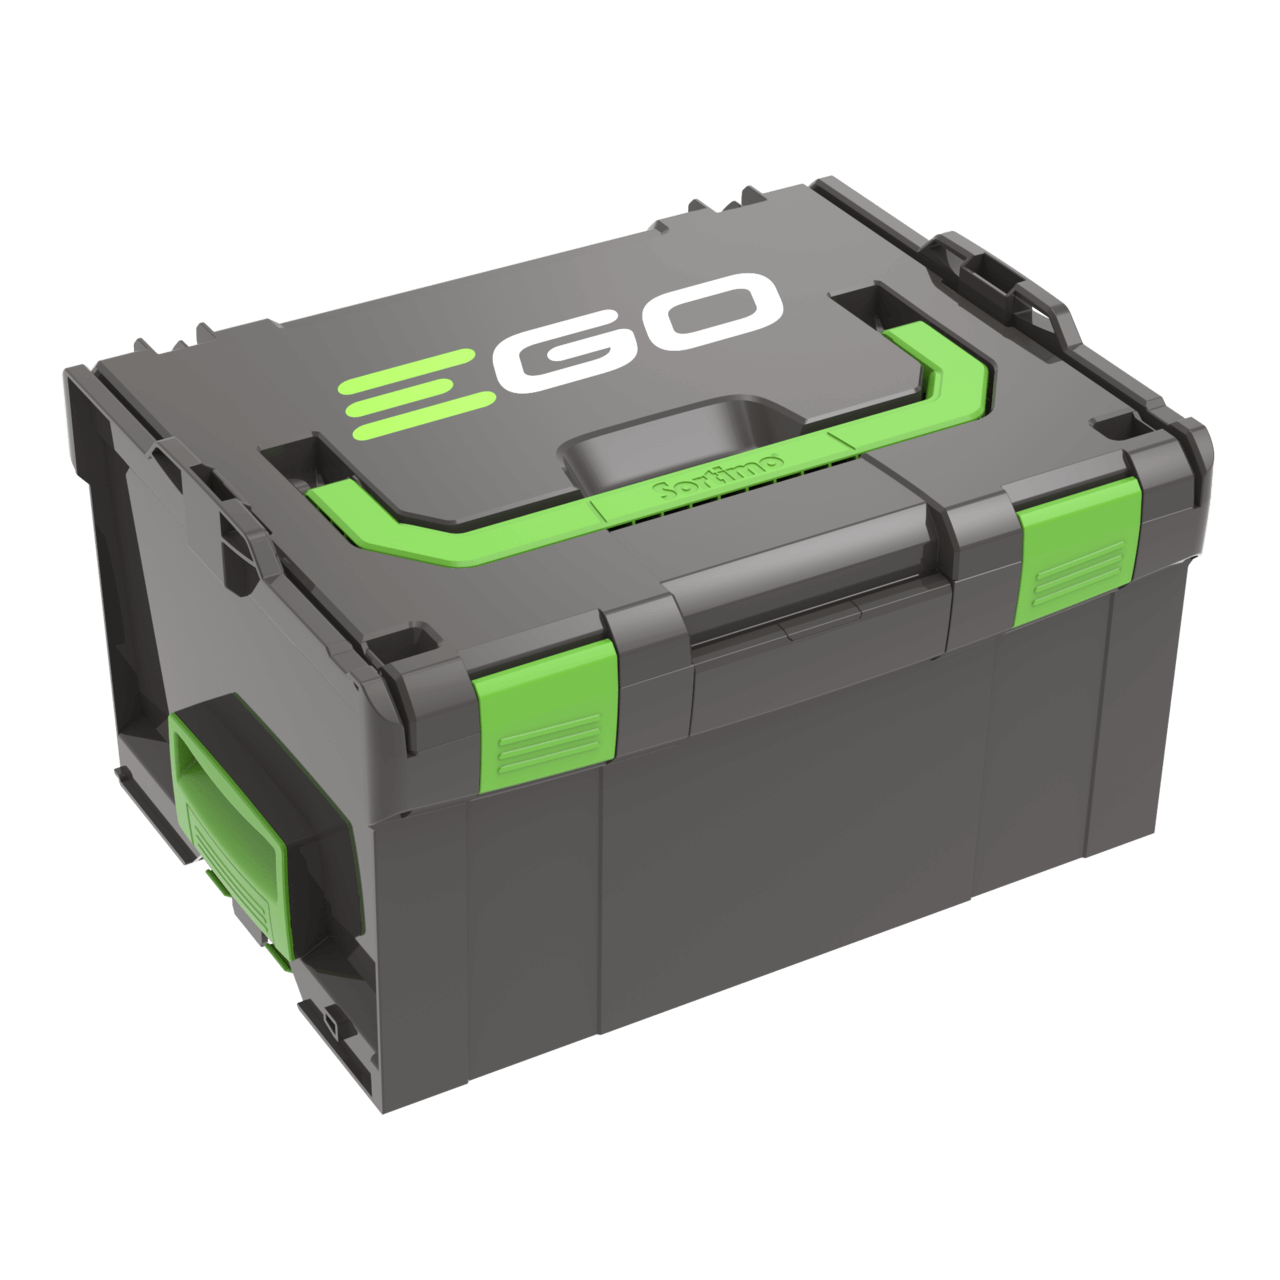 Prevozna škatla, v kateri lahko prevažate 5 prenosnih baterij vseh velikosti EGO. Lahko se poveže z napravo BBOX3000